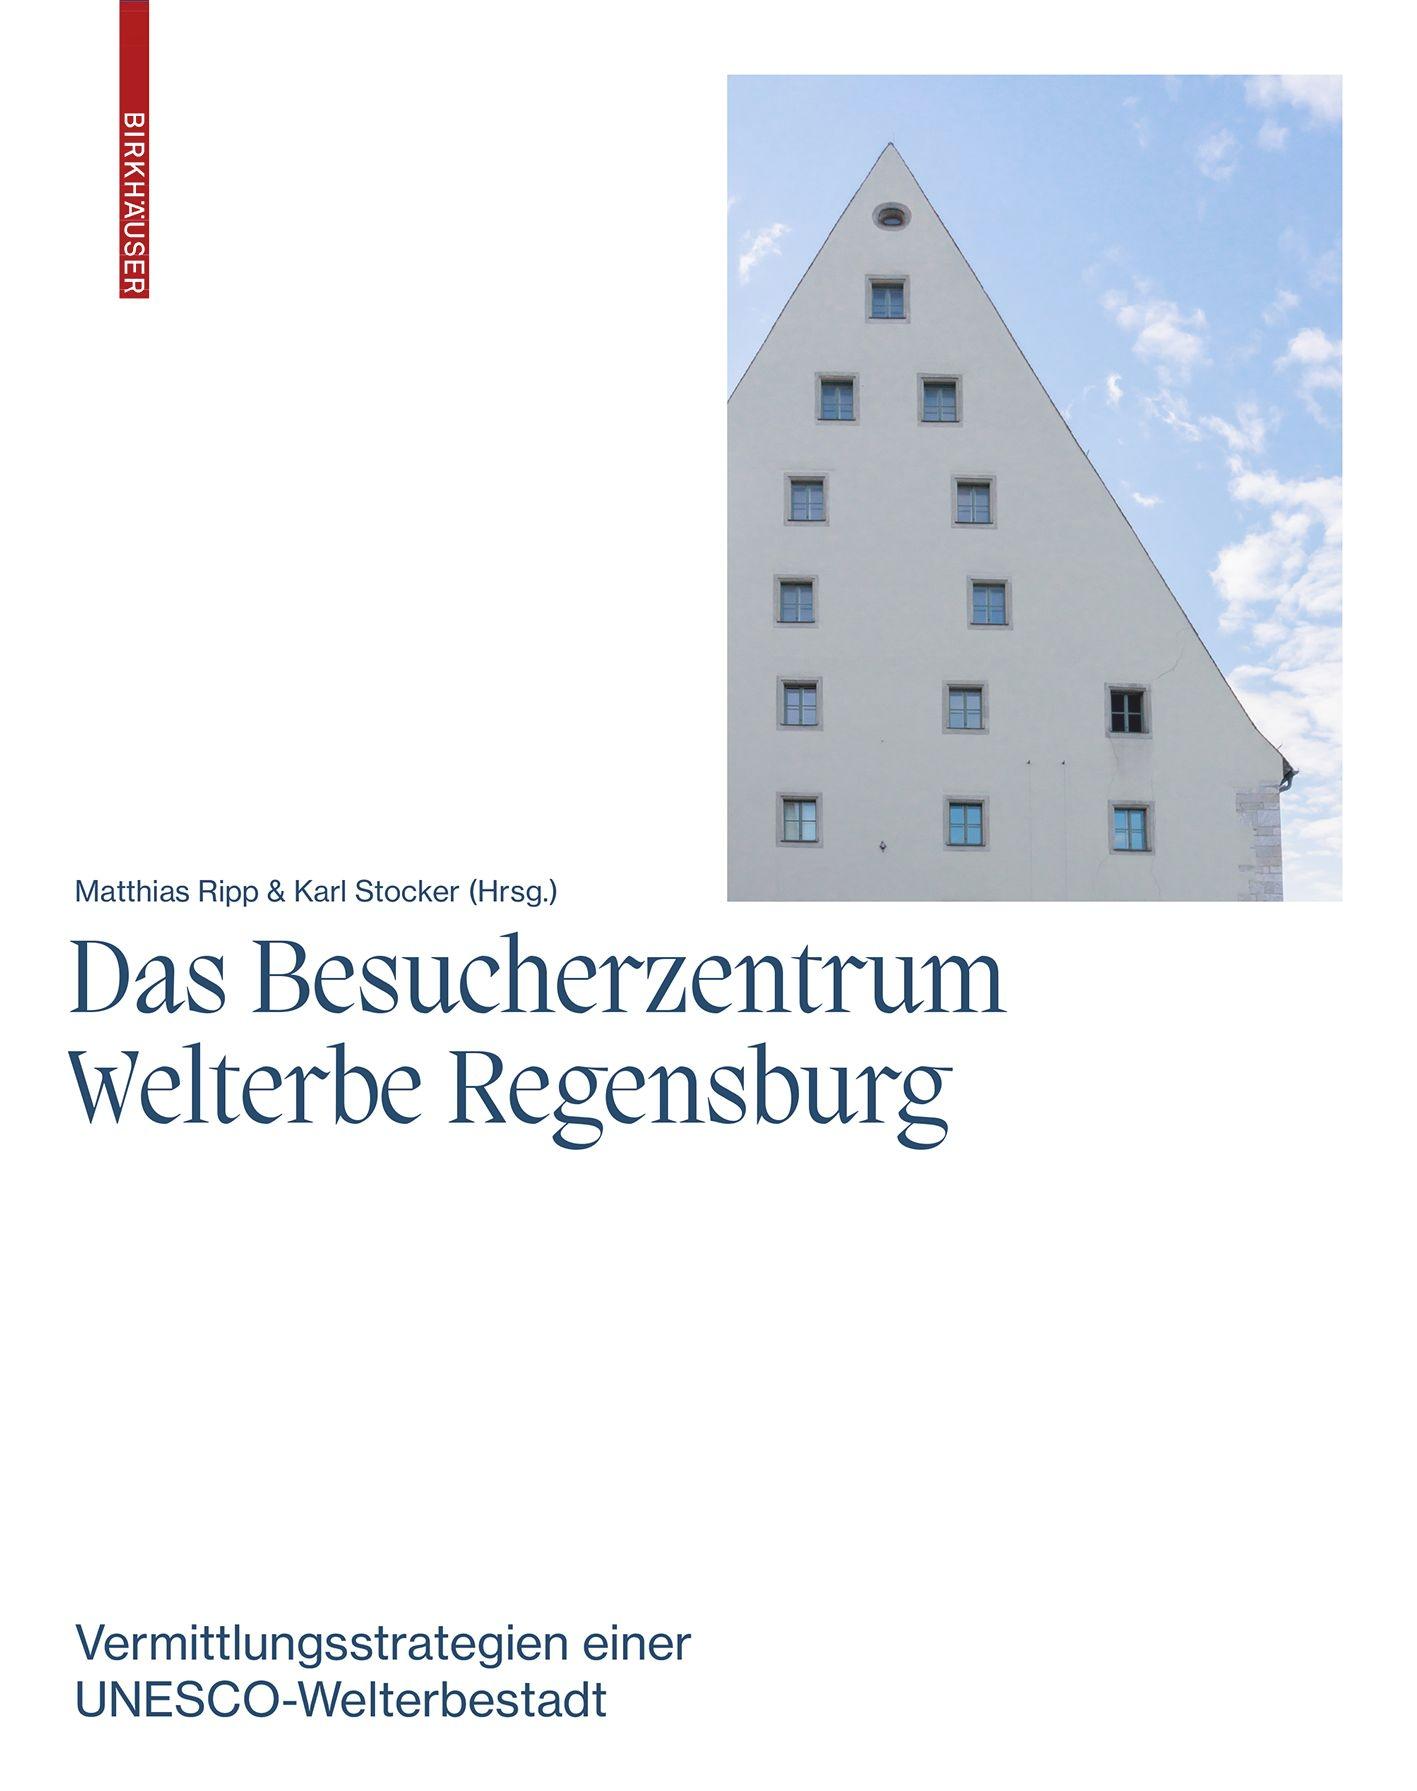 Das Besucherzentrum Welterbe Regensburg's cover